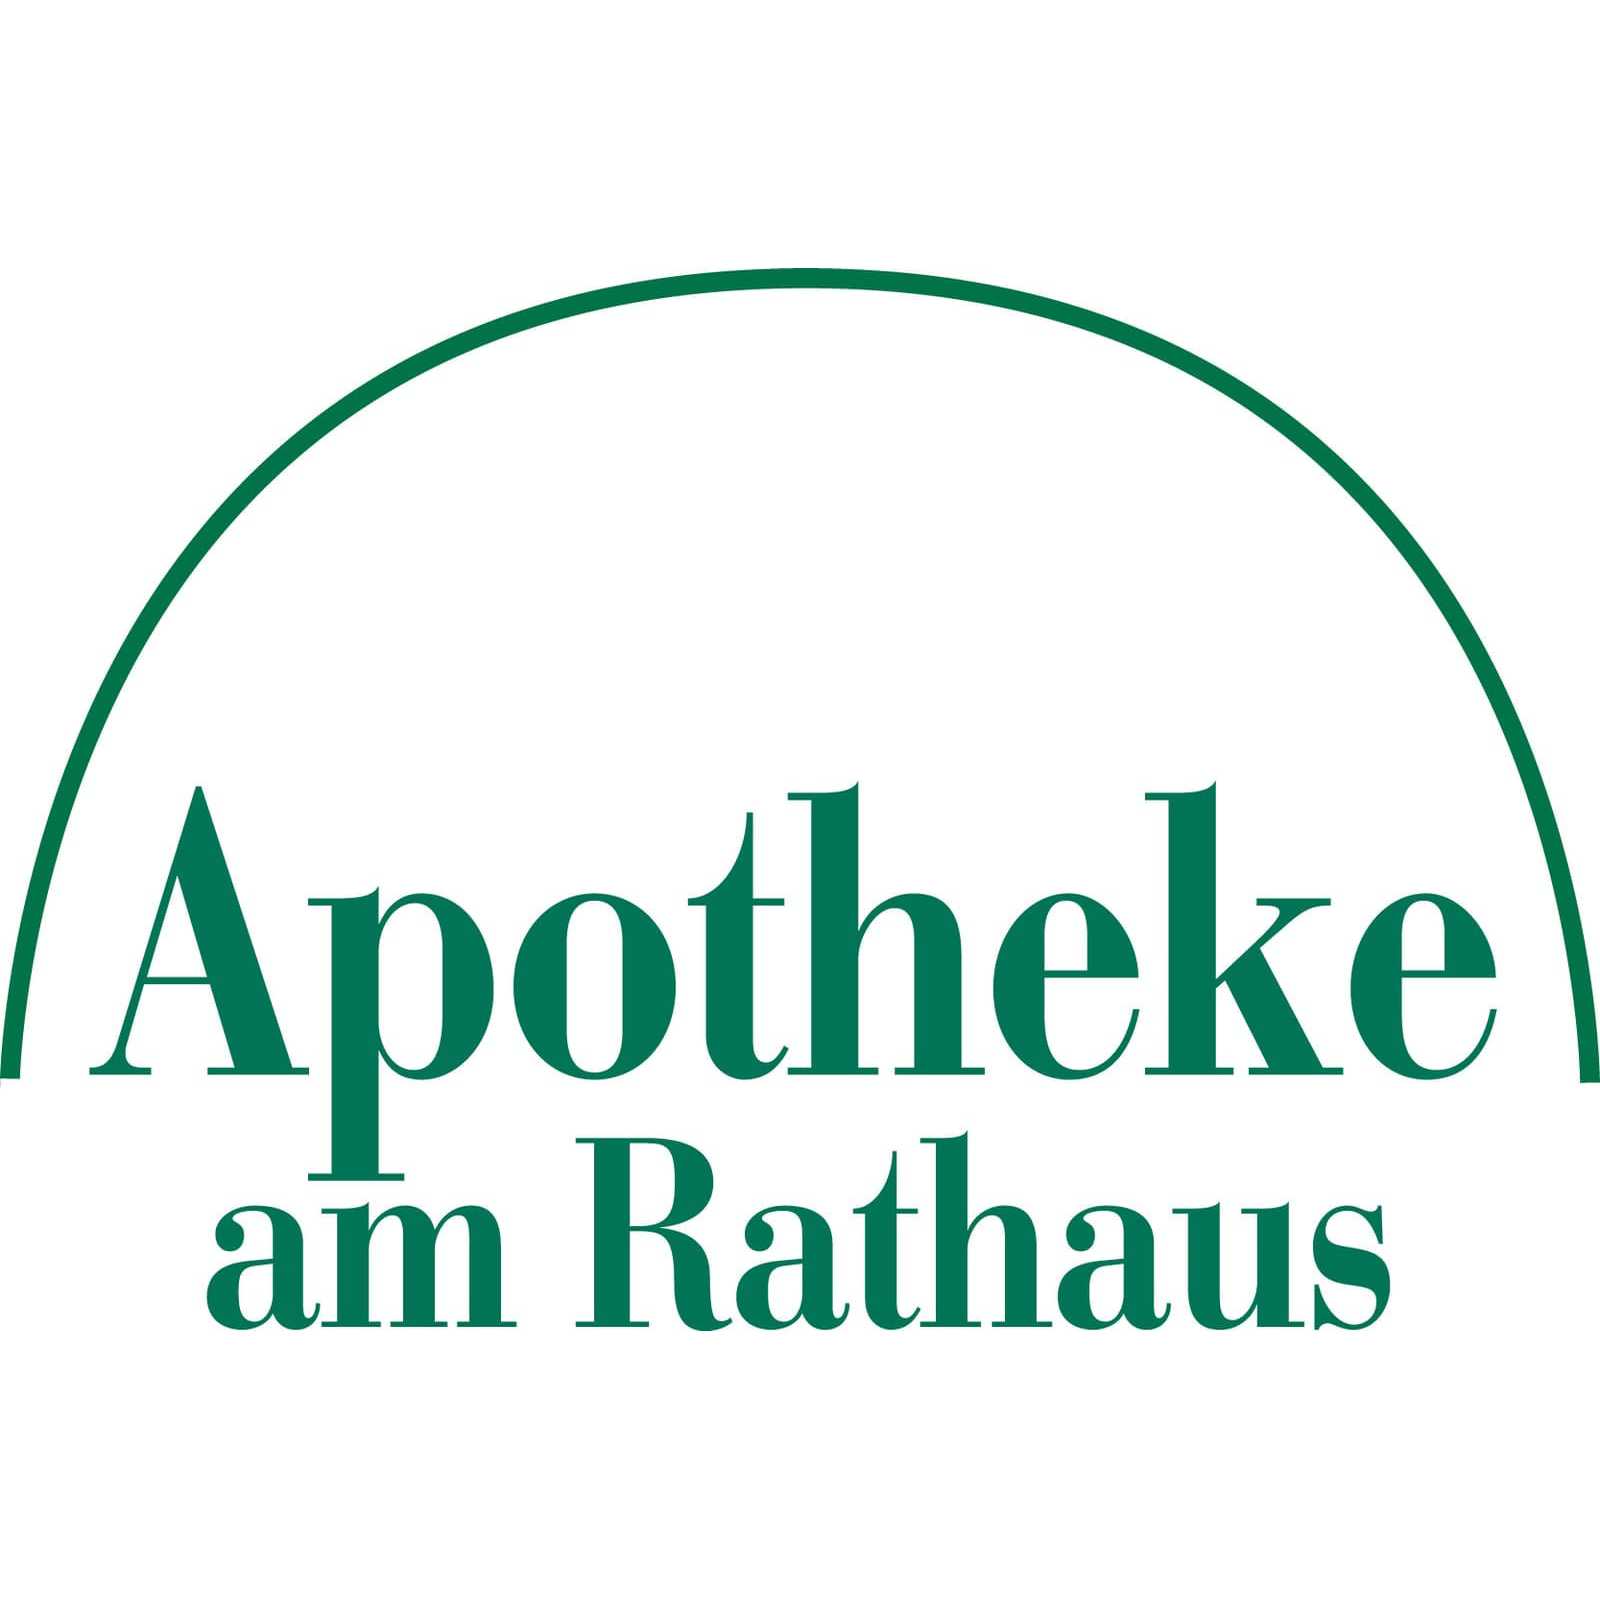 Apotheke am Rathaus in Immenstadt im Allgäu - Logo